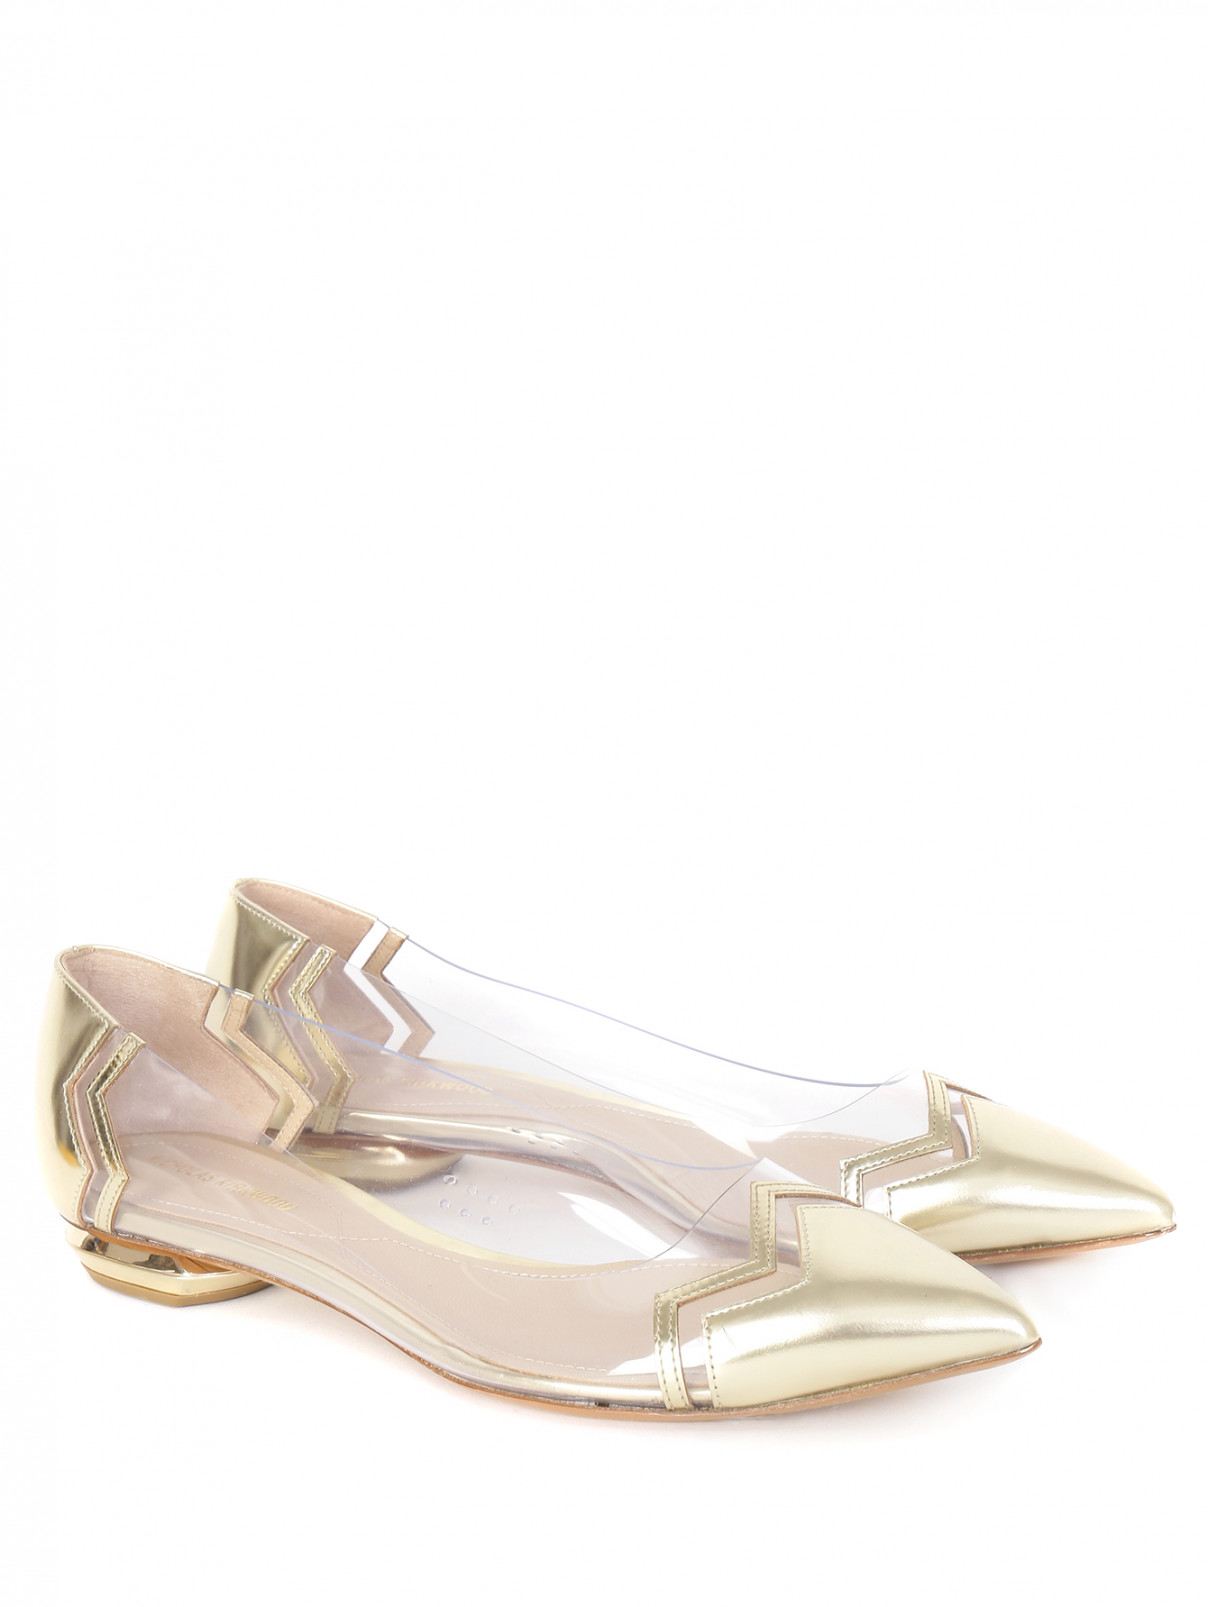 Туфли из лаковой кожи с контрастной отделкой на низком каблуке Nicholas Kirkwood  –  Общий вид  – Цвет:  Золотой